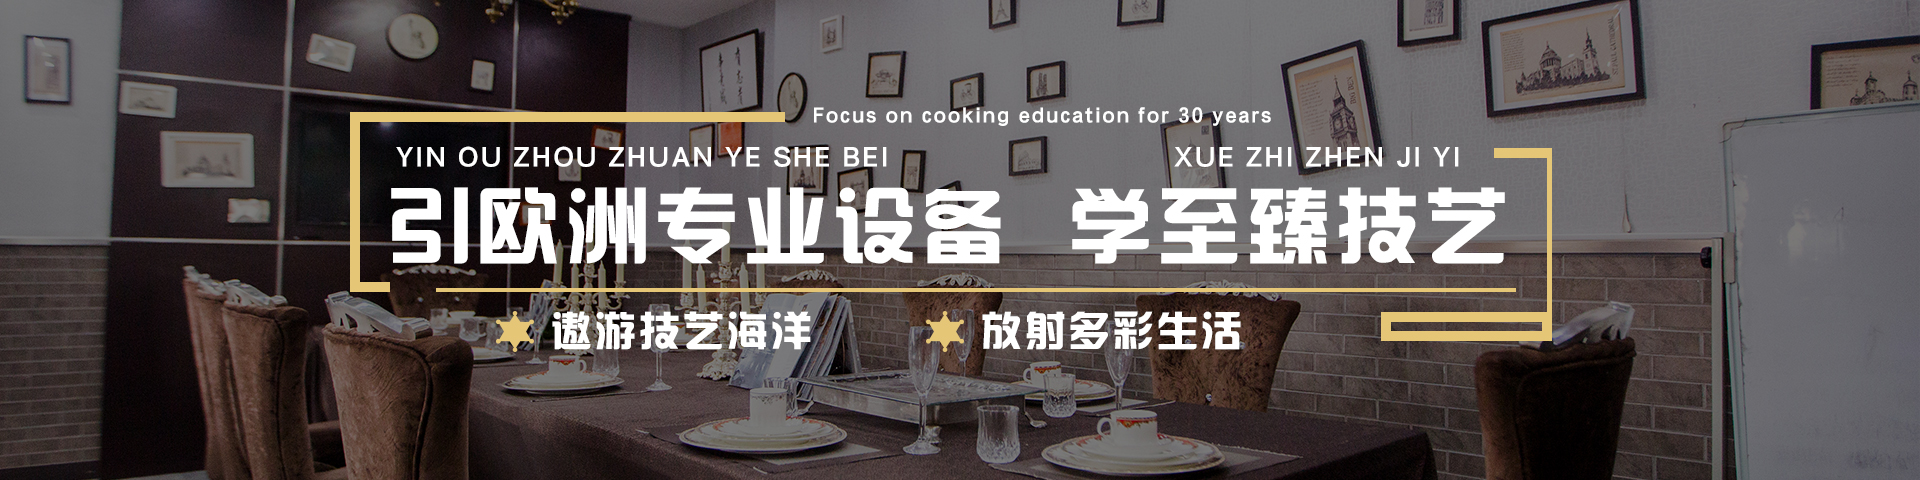 教学环境_西点西餐学院_天津新东方烹饪学校